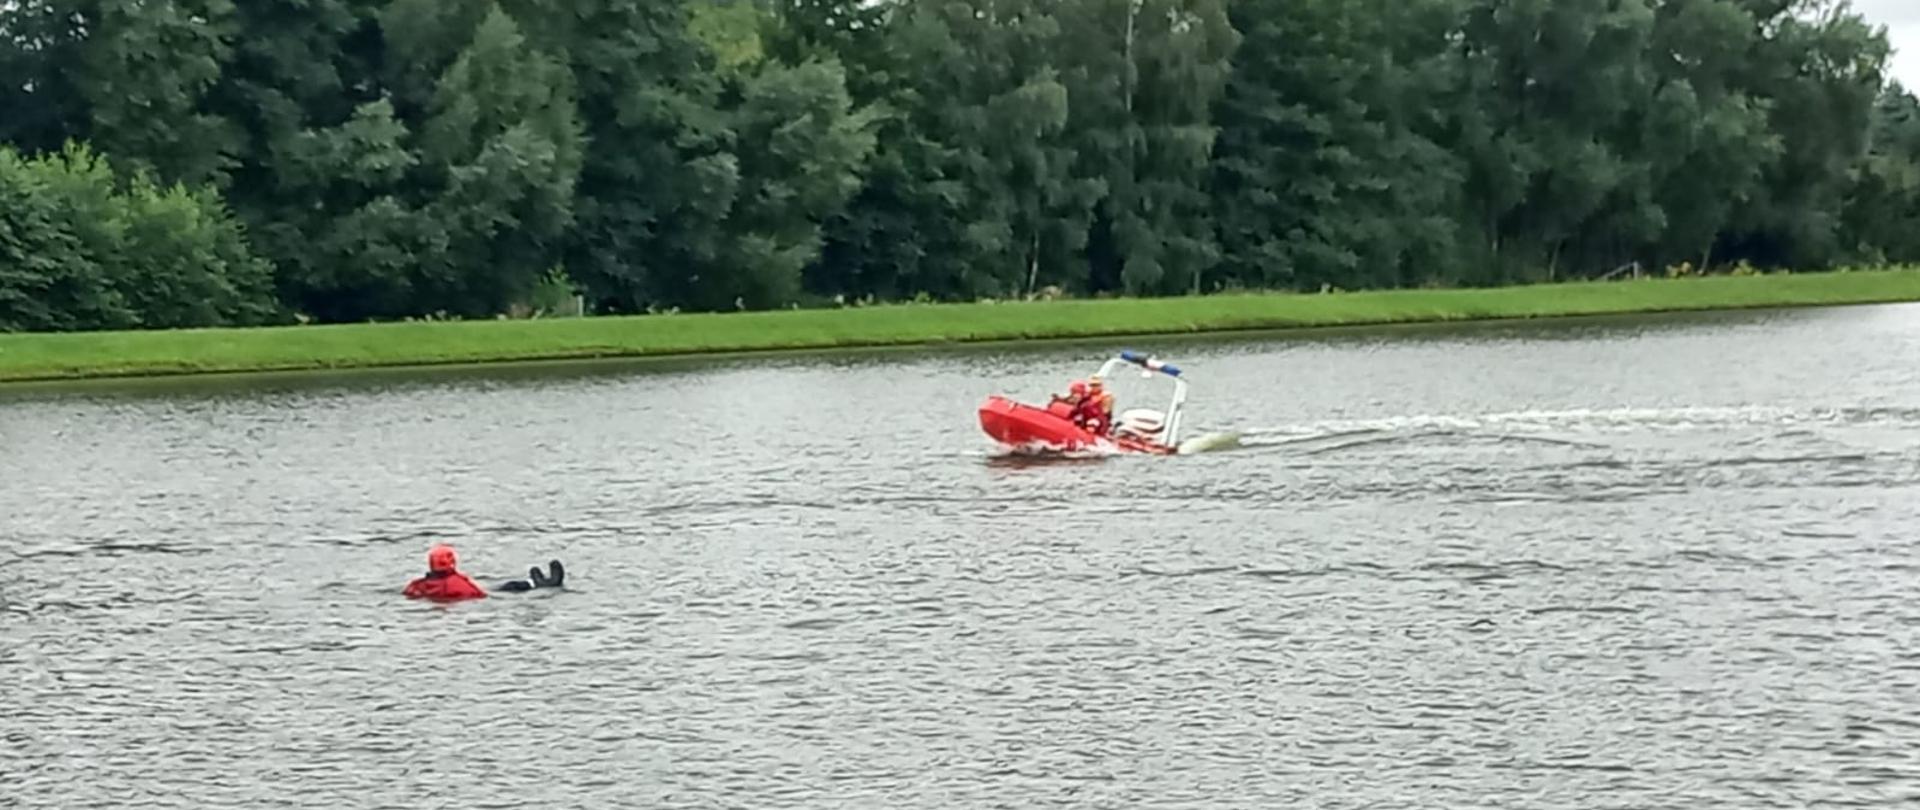 Zdjęcie przedstawia dwóch strażaków na czerwonej łodzi płynących do osoby poszkodowanej znajdującej się w wodzie, która zabezpieczona jest w specjalne ubranie, kamizelkę utrzymującą na wodzie oraz kask. W tle znajdują się drzewa za zbiornikiem wodnym.